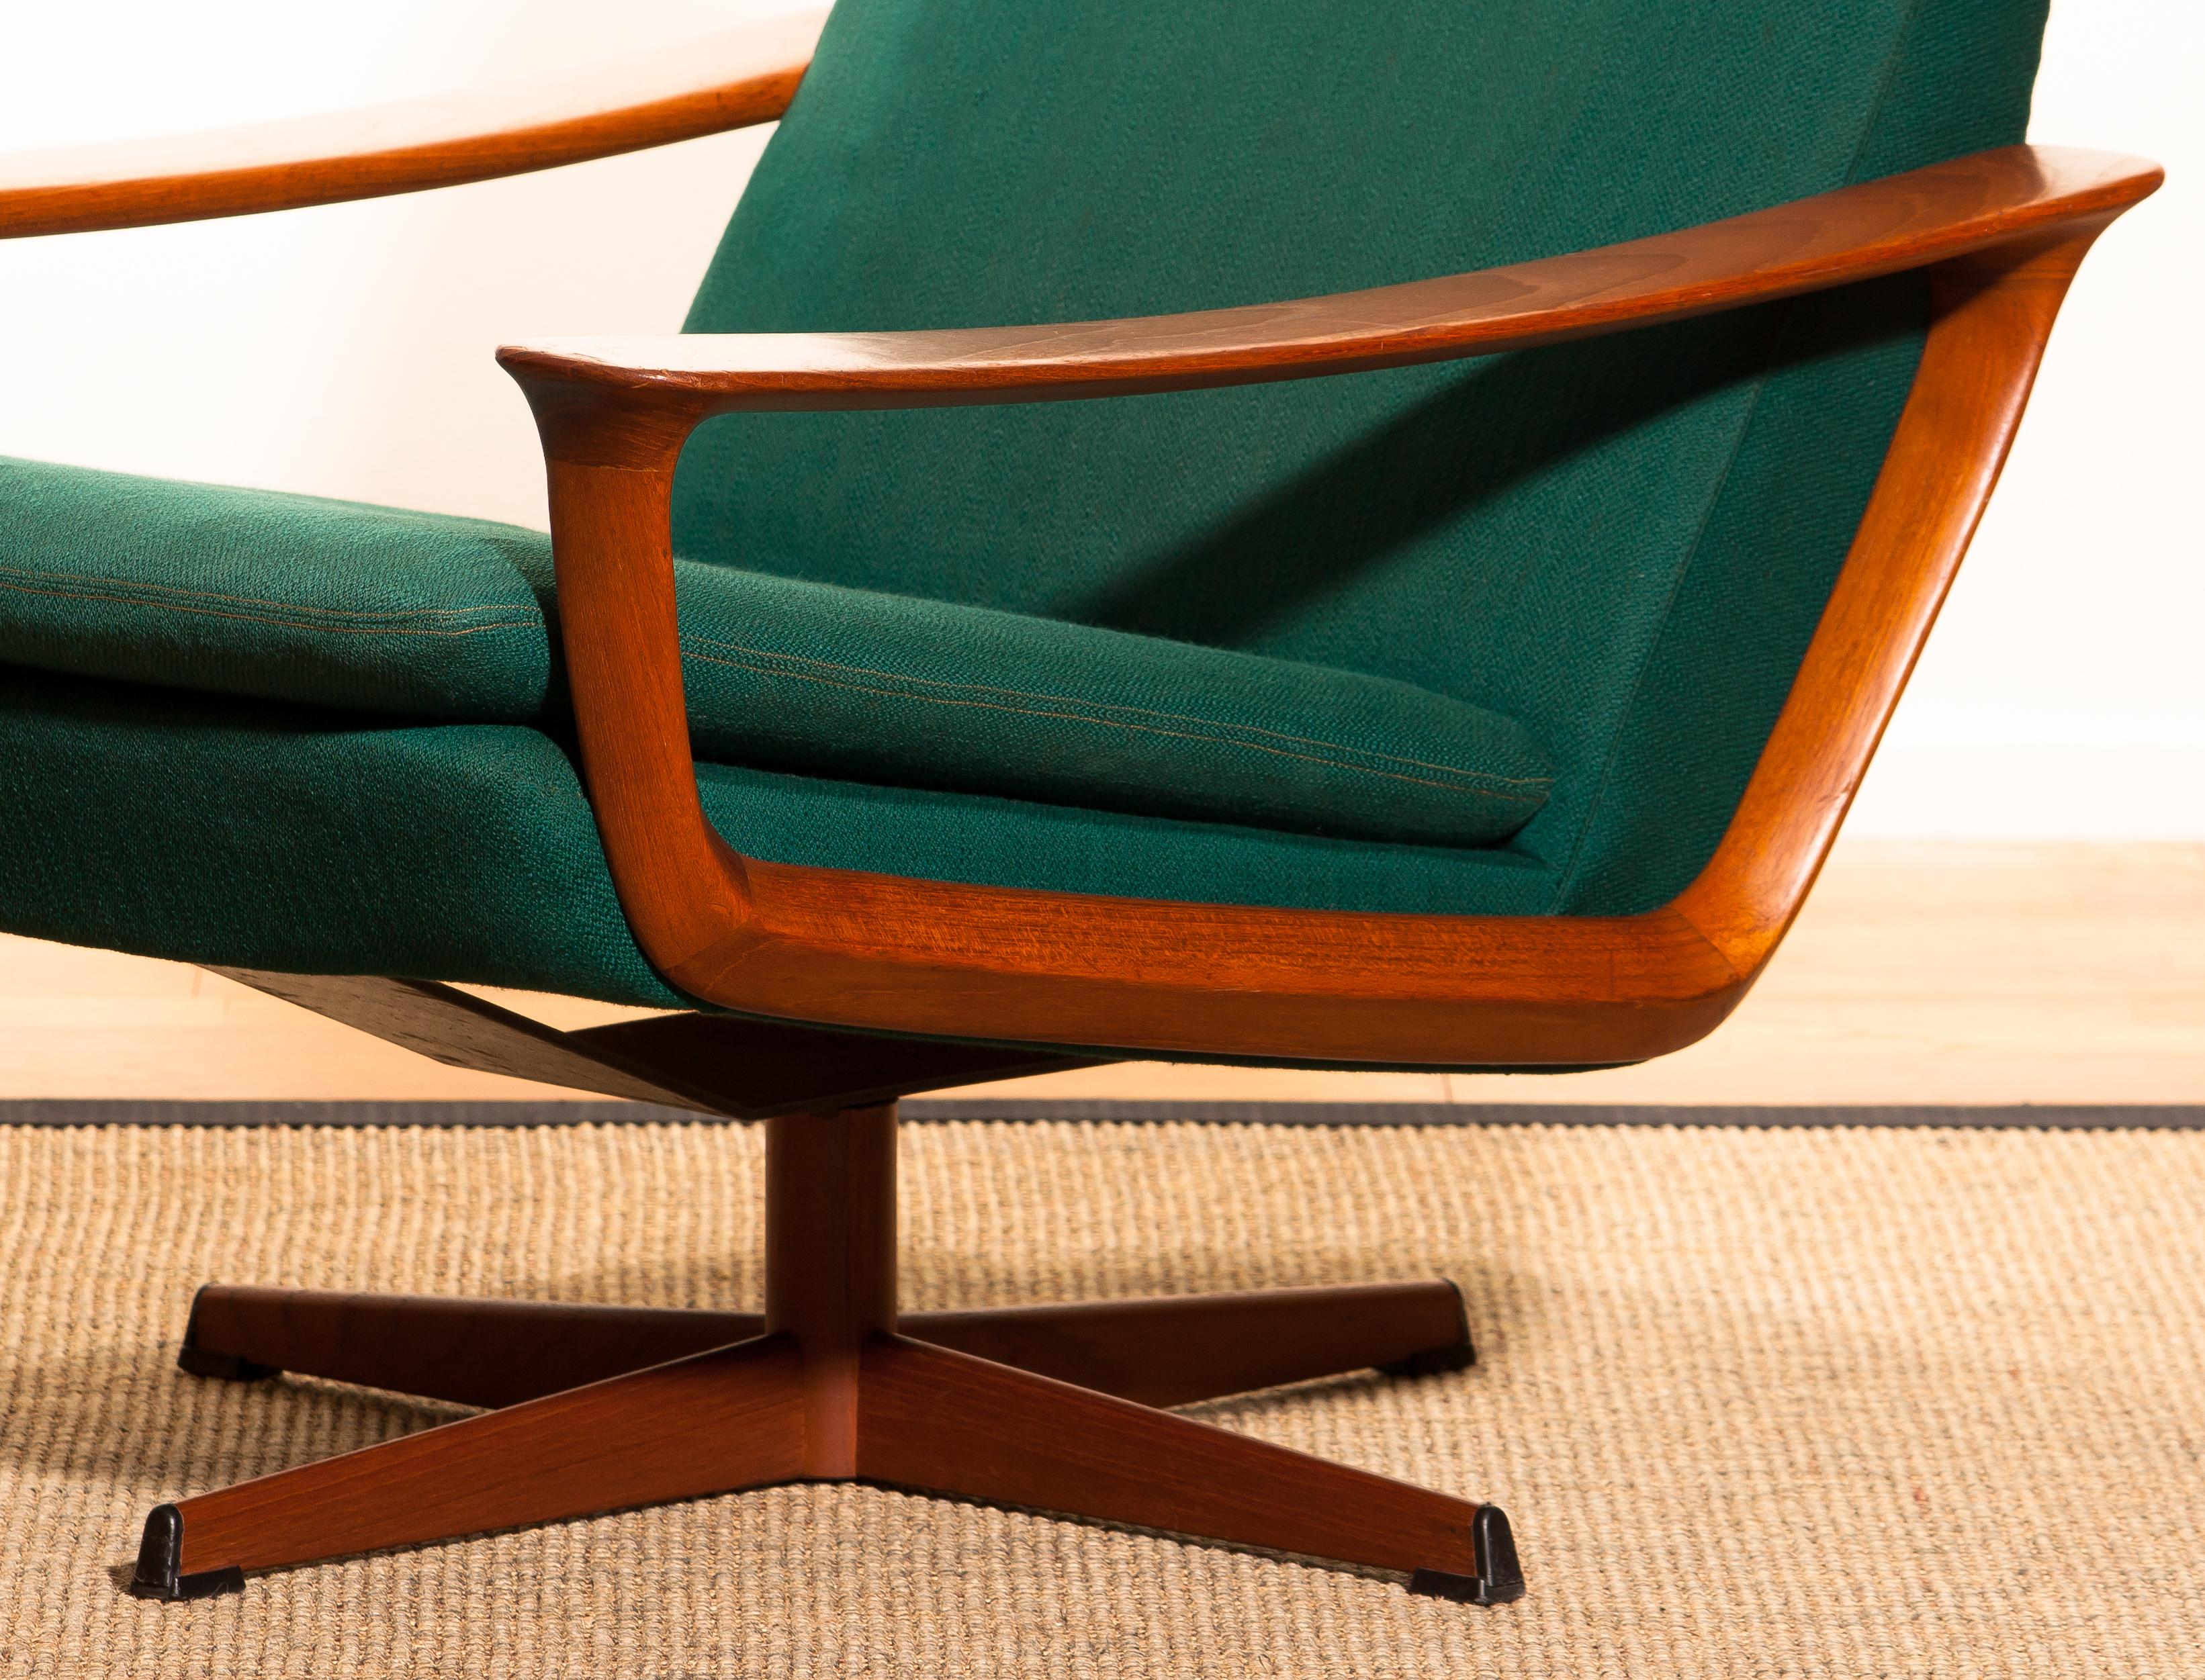 1960s, Teak Swivel Chair by Johannes Andersen for Trensum Denmark 1